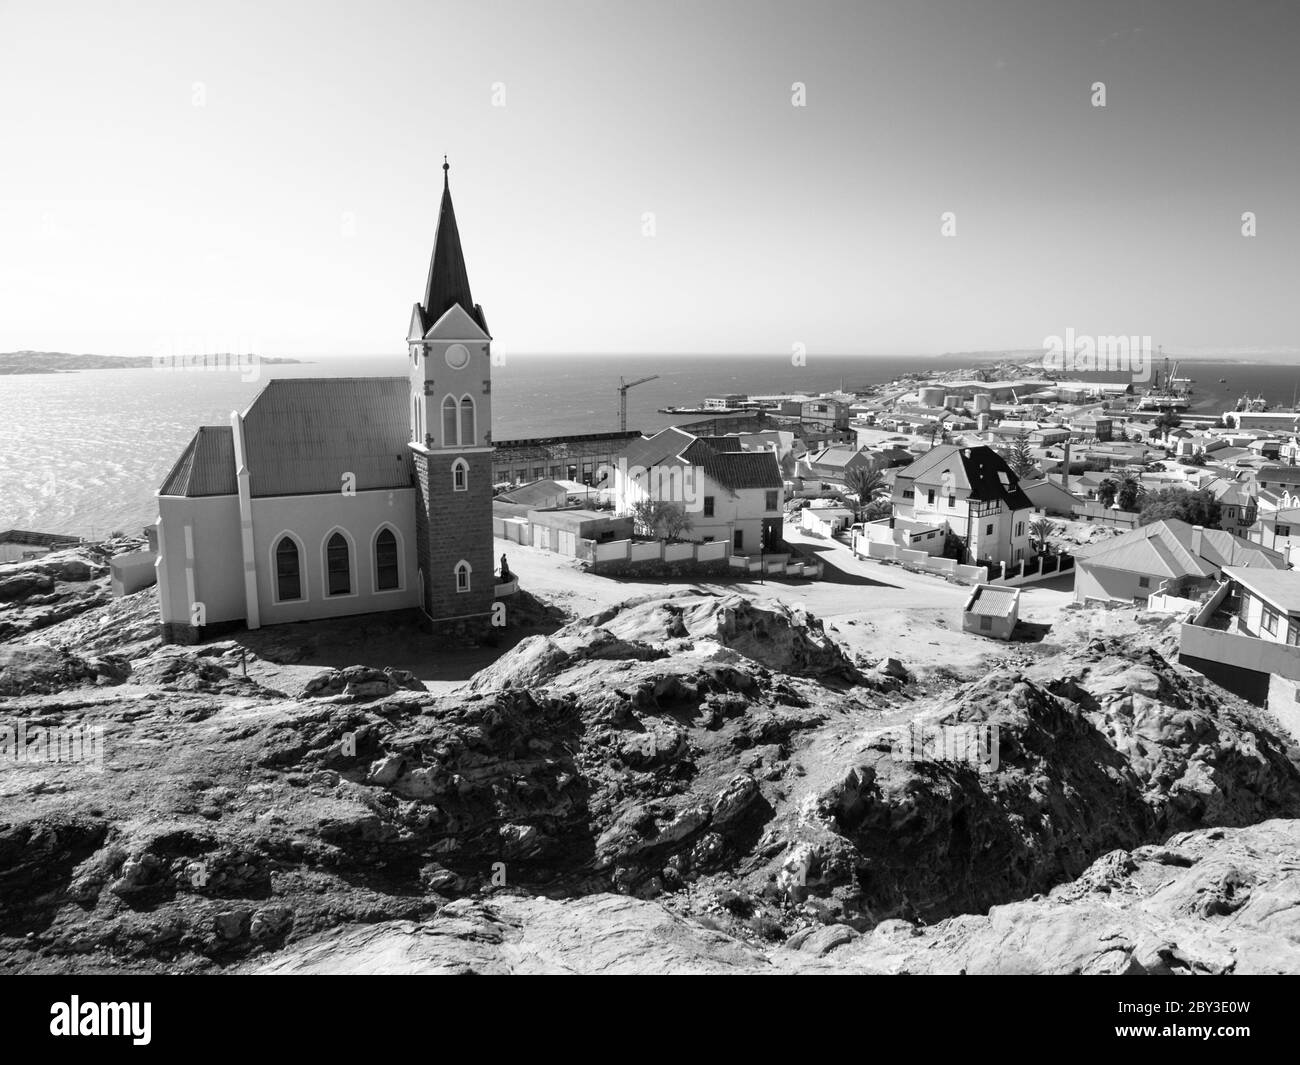 Chiesa coloniale tedesca a luderitz namibia, Namibia. Immagine in bianco e nero. Foto Stock